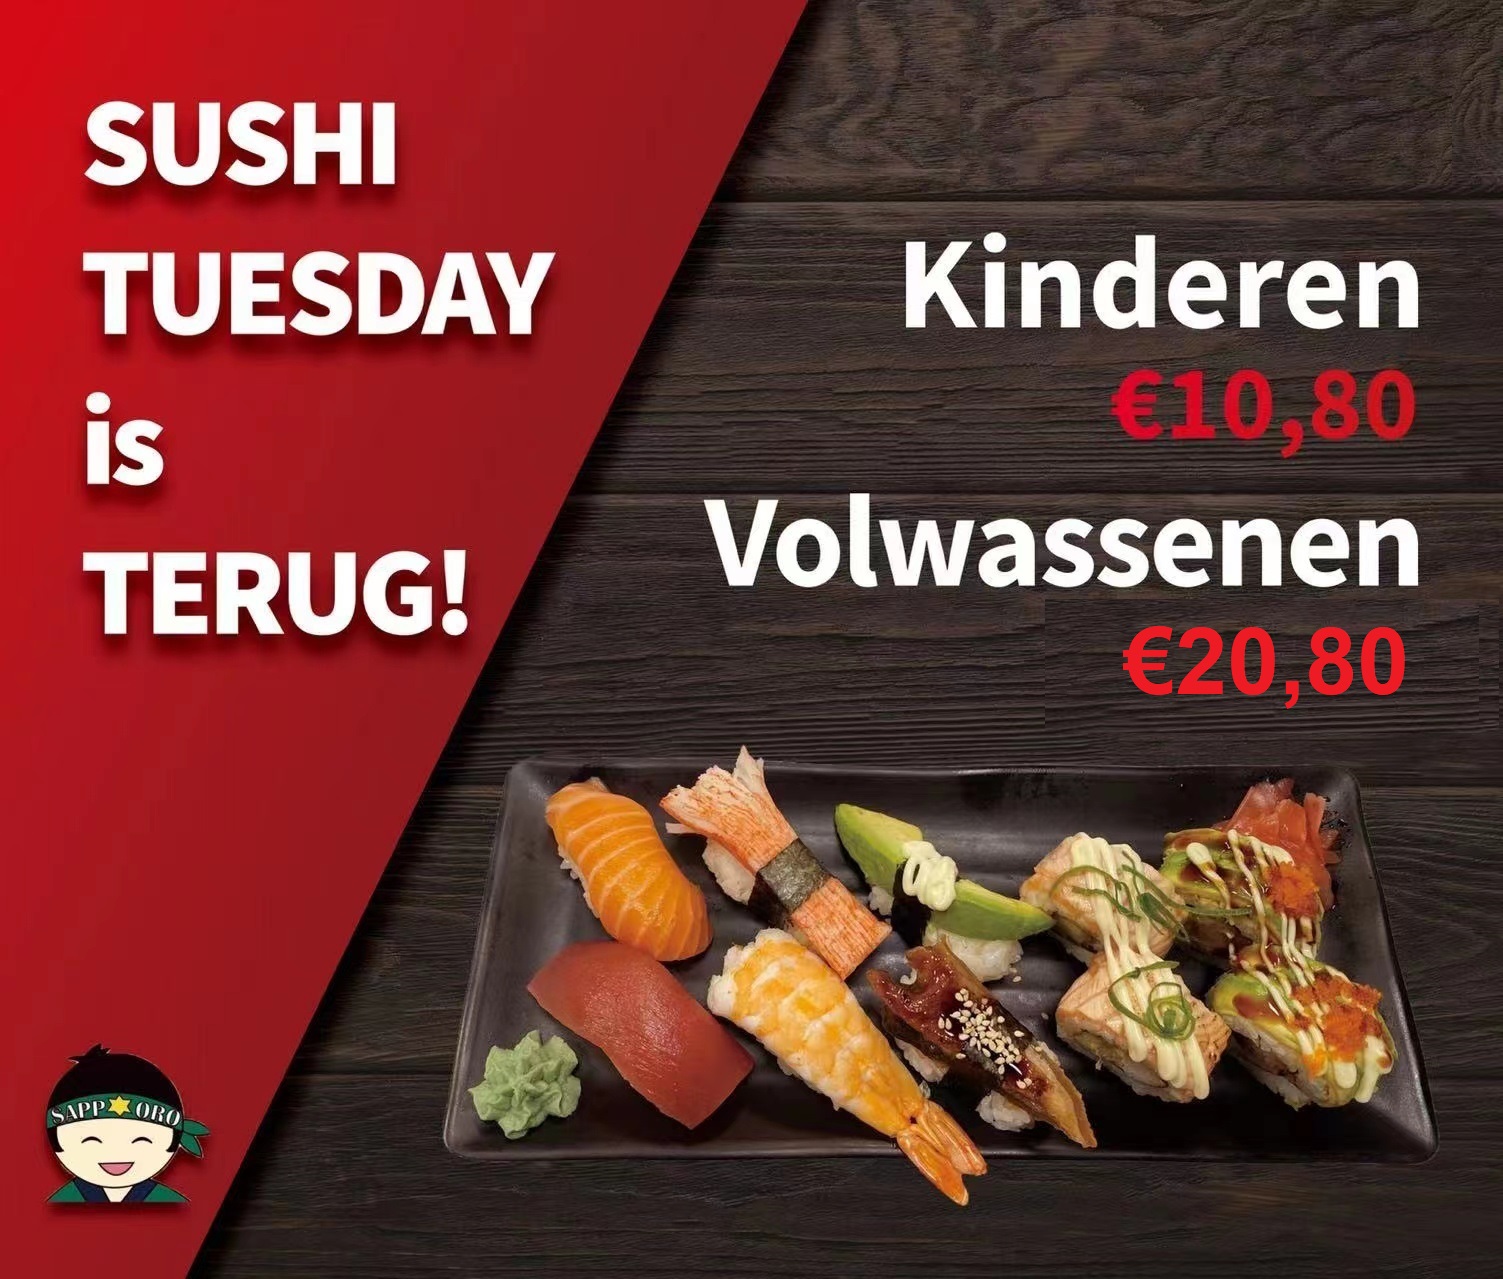 Sushi Tuesday